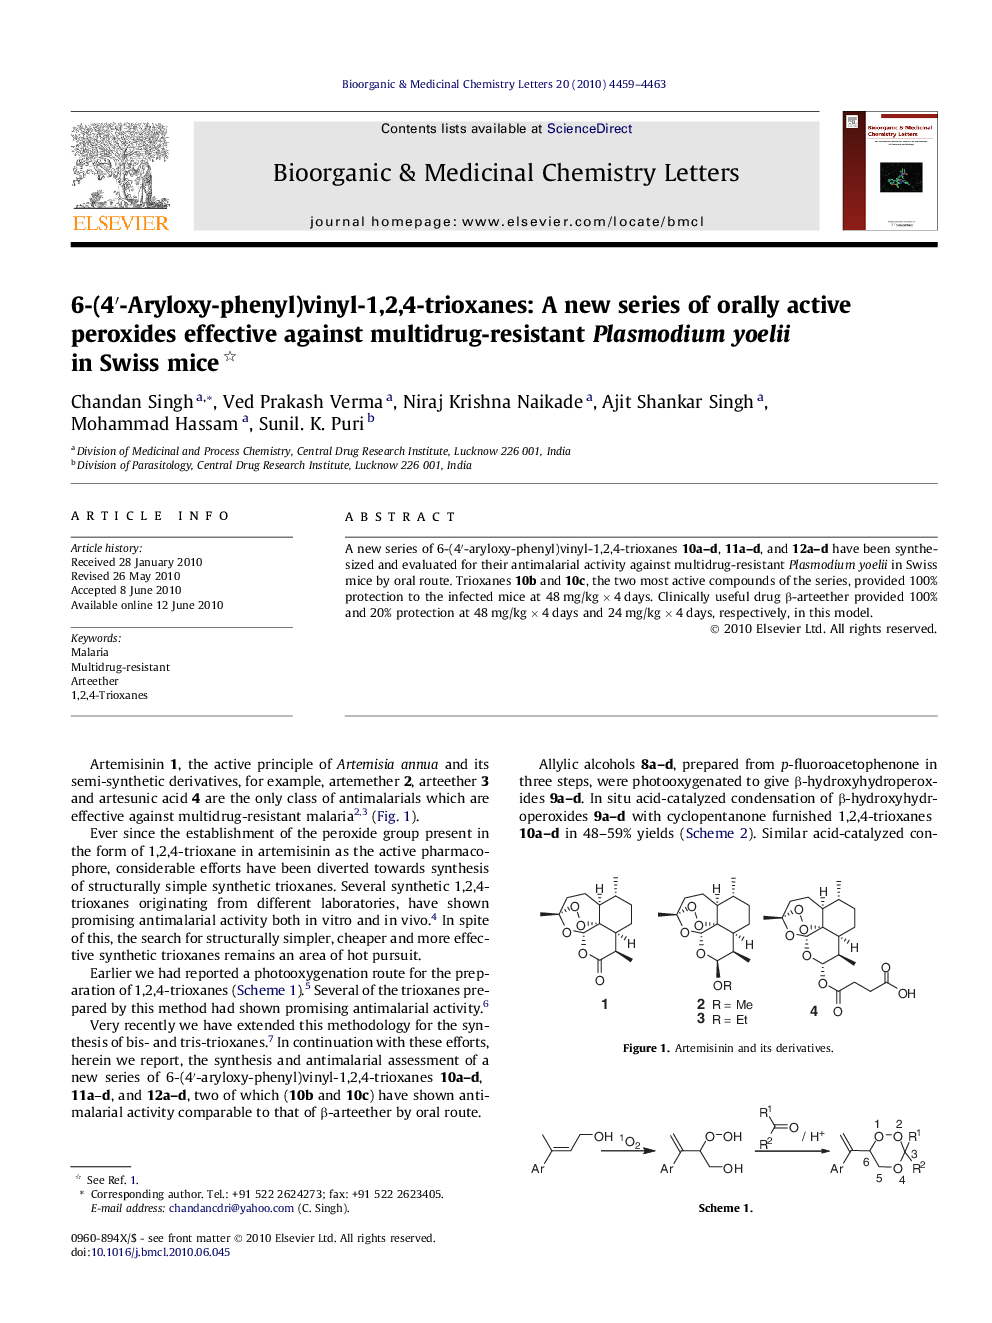 6-(4â²-Aryloxy-phenyl)vinyl-1,2,4-trioxanes: A new series of orally active peroxides effective against multidrug-resistant Plasmodium yoelii in Swiss mice